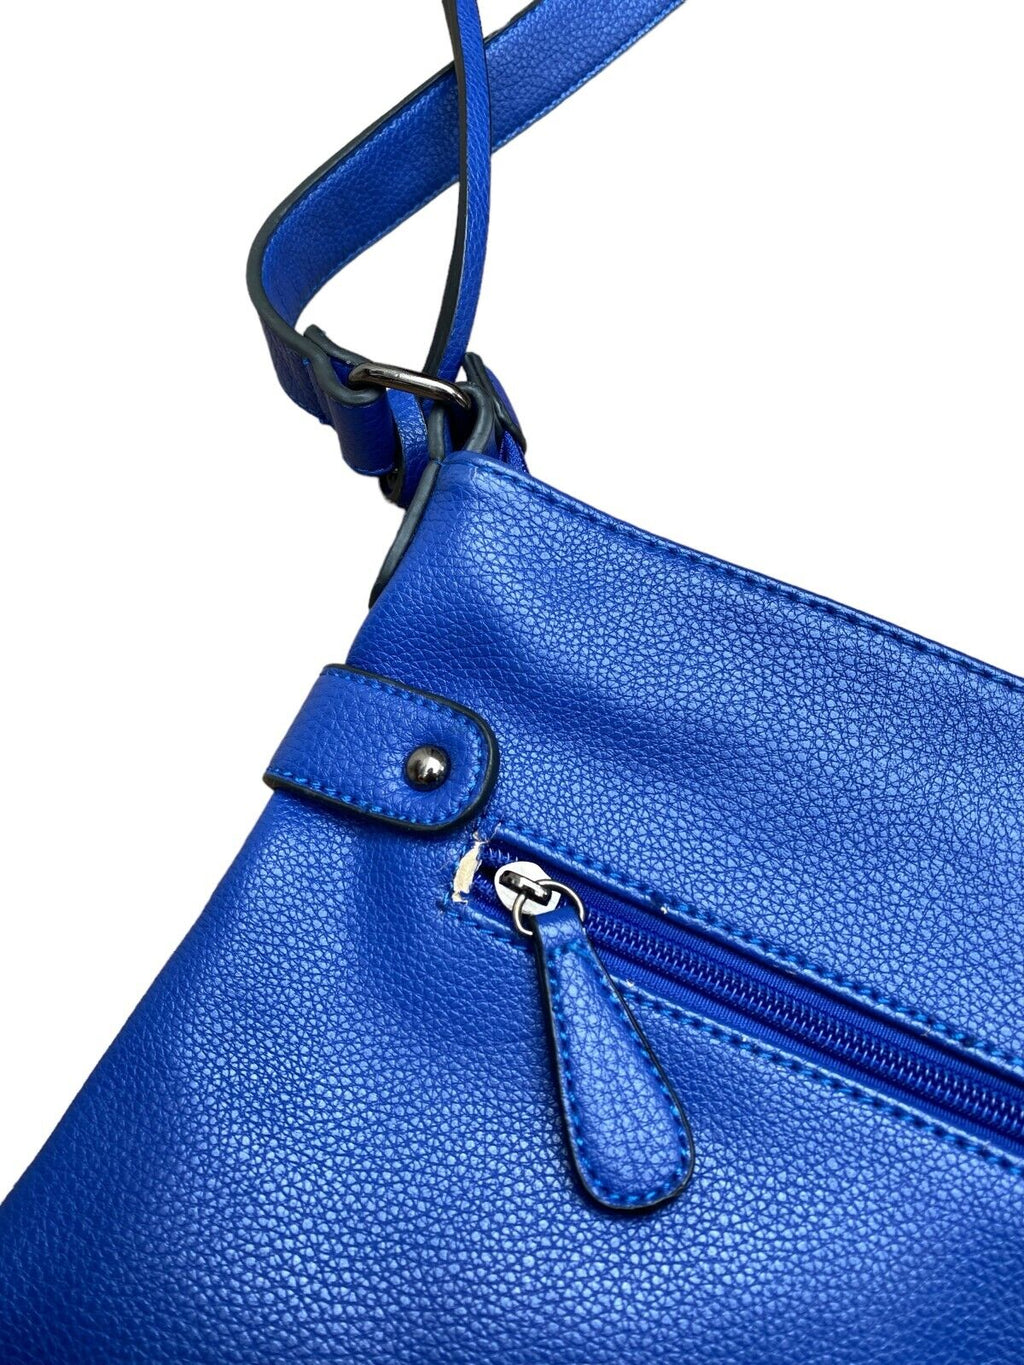 Vintage Blue Leather Handbag Shoulderbag   One size